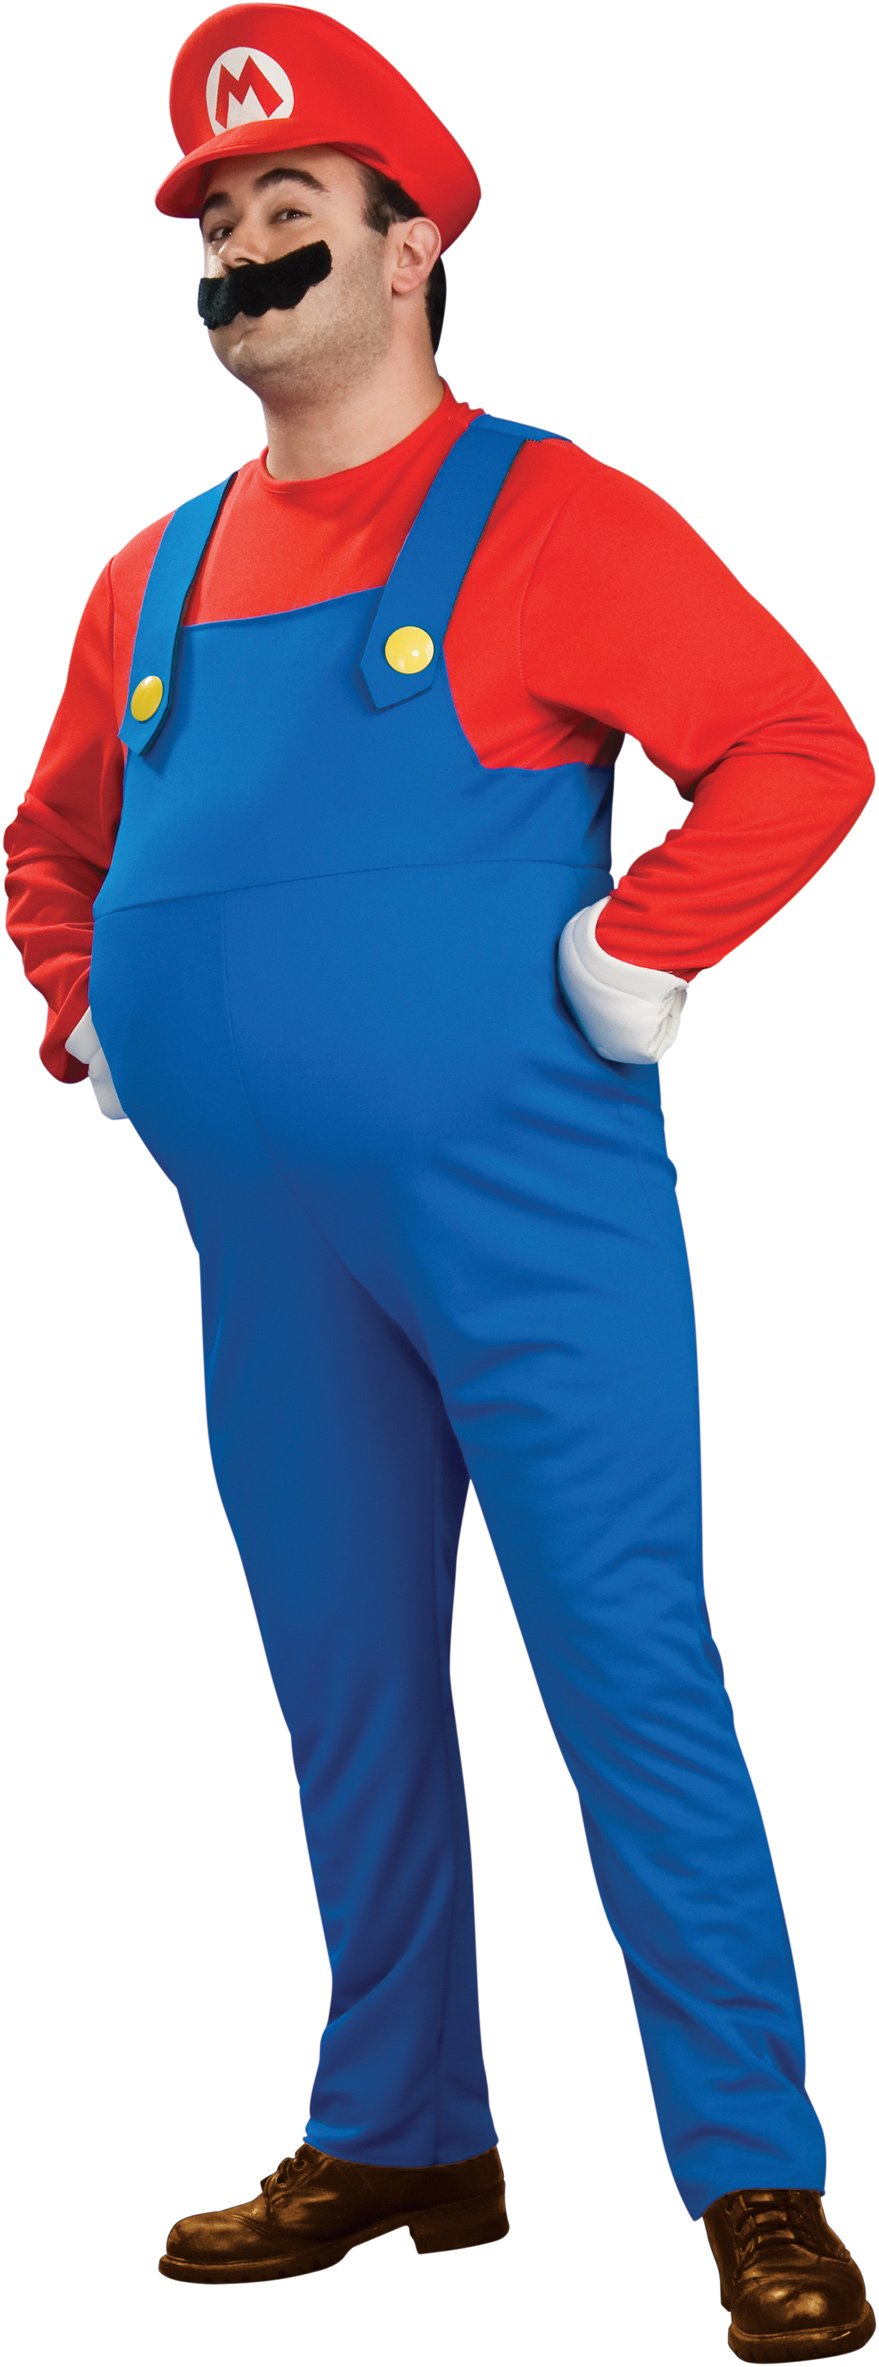 Super Mario Bros. - Deluxe Mario Plus Adult Costume